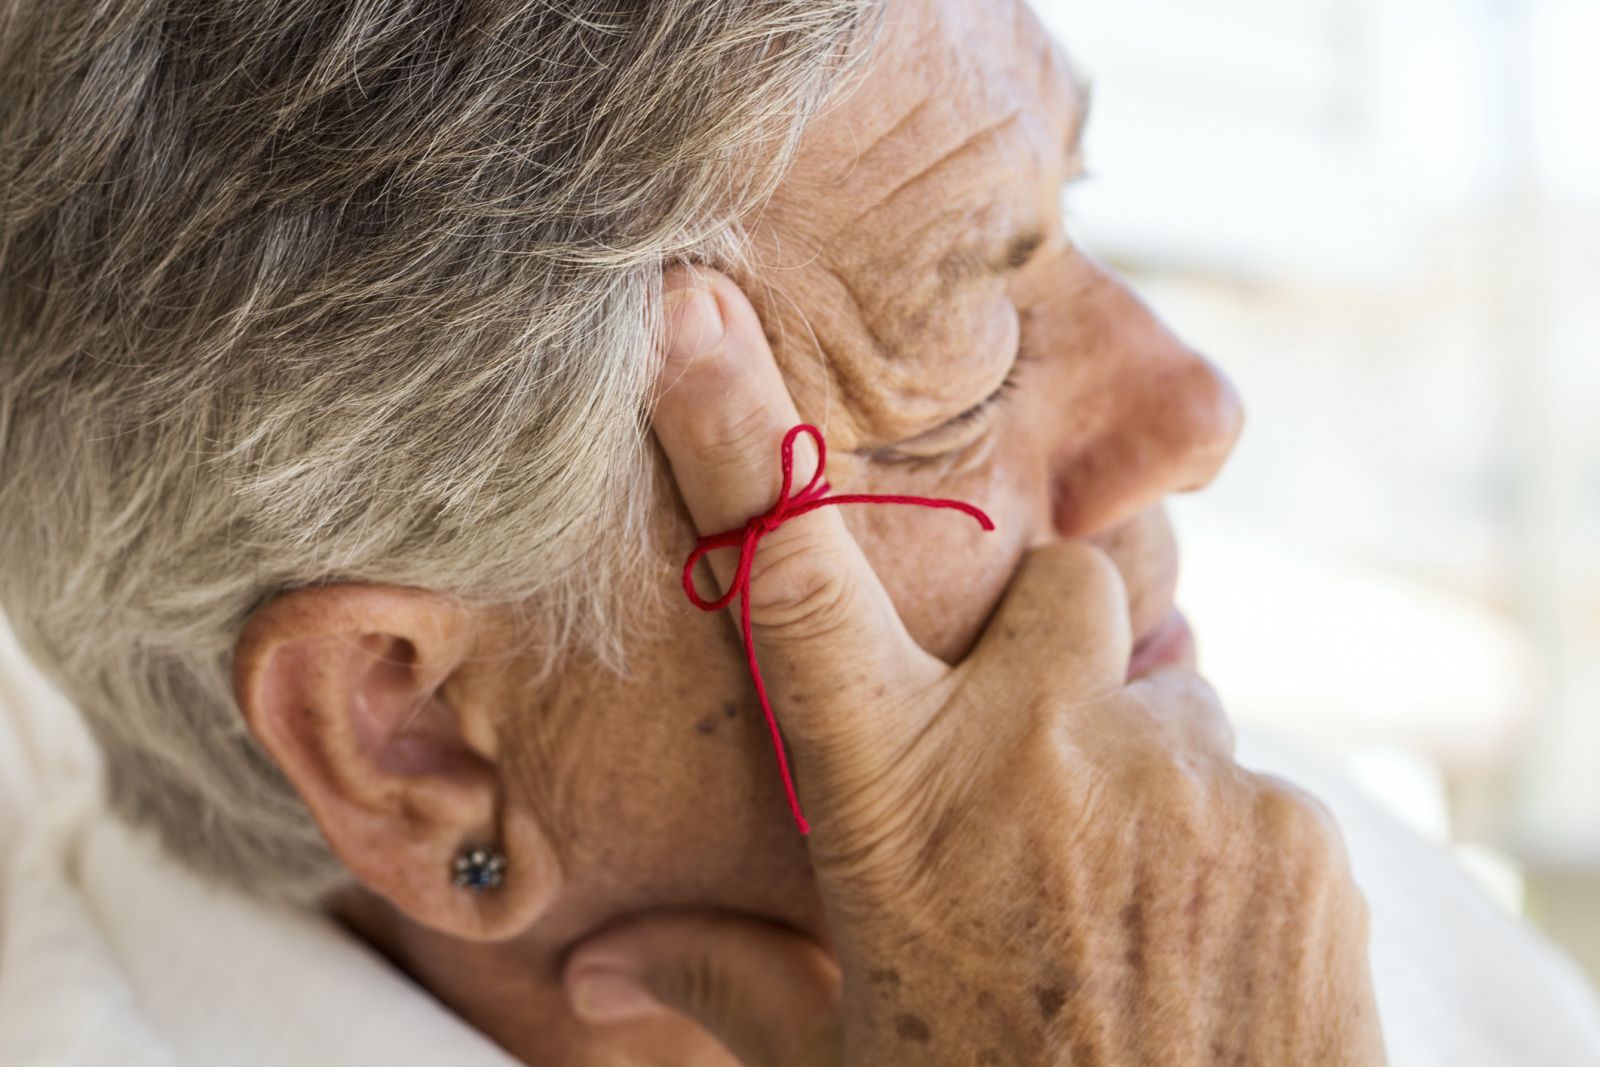 Uno de los primeros síntomas del alzhéimer es la dificultad para retener información nueva